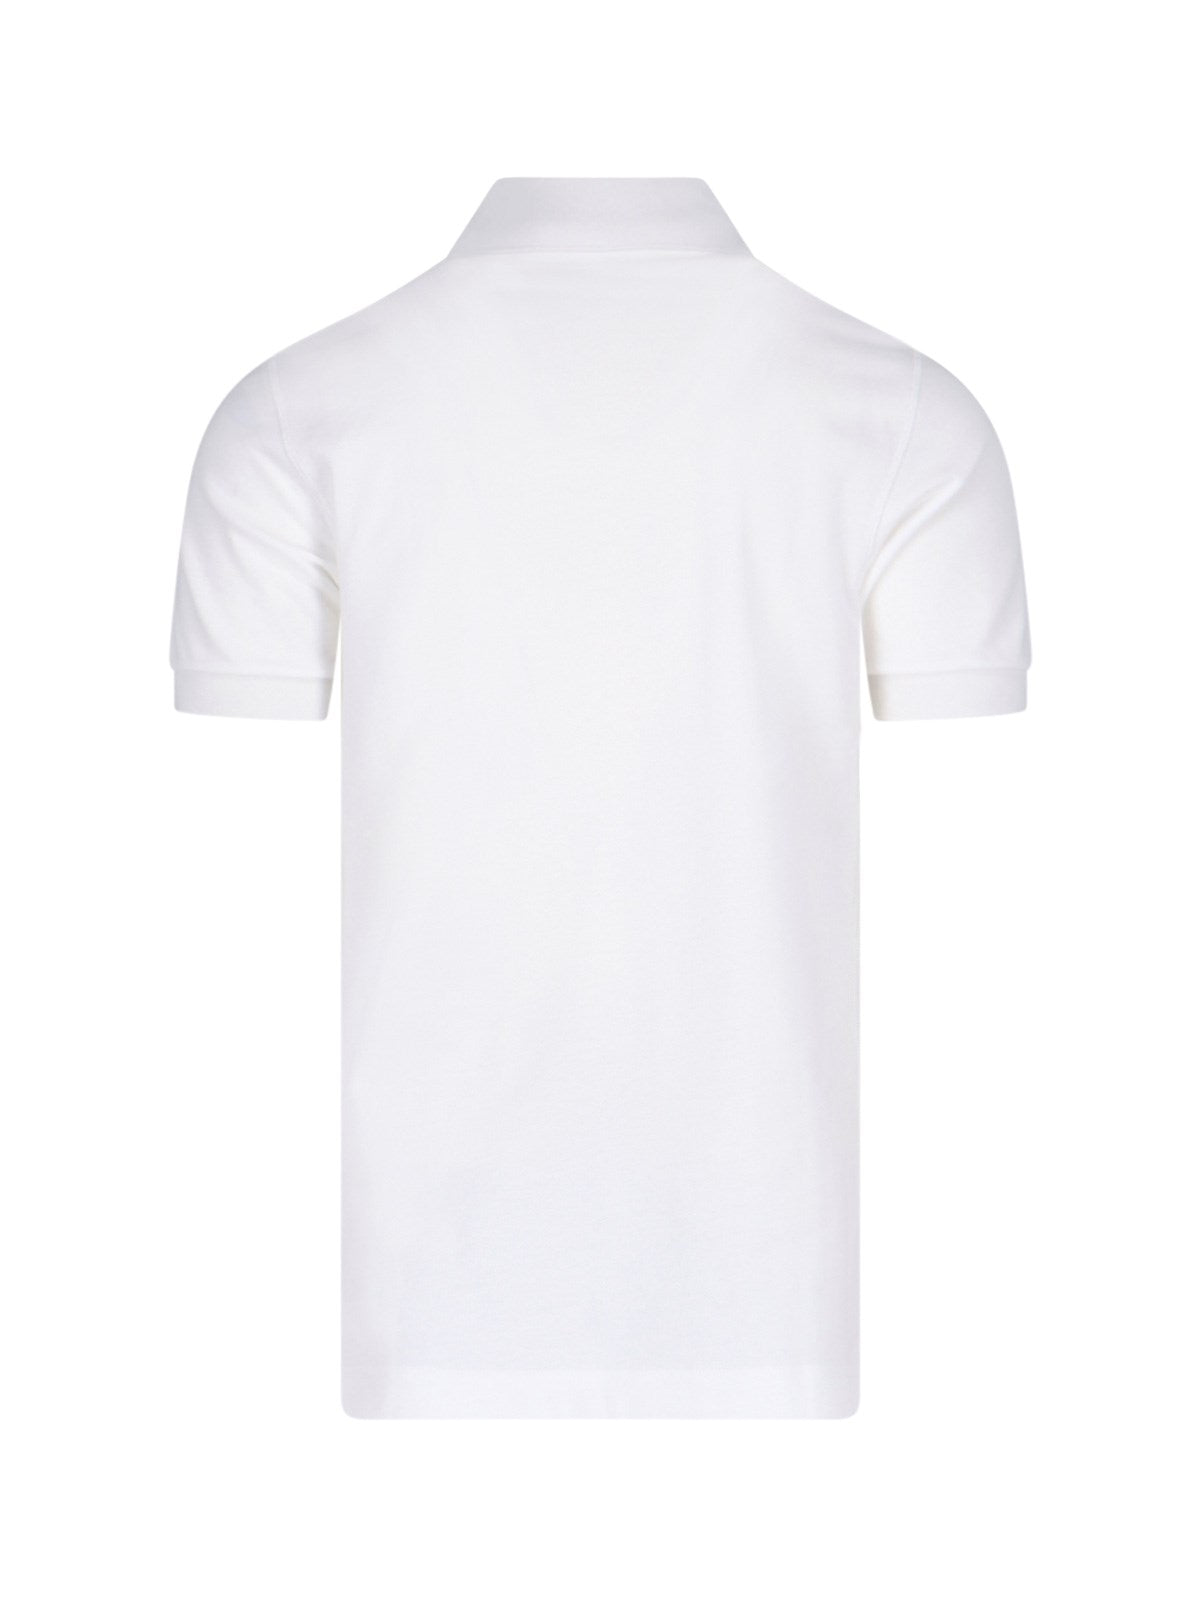 Dolce & Gabbana T-Shirt patch logo-t-shirt-Dolce & Gabbana-T-shirt patch logo Dolce & Gabbana, in cotone bianco, colletto classico, chiusura bottoni, maniche corte, orlo dritto.-Dresso